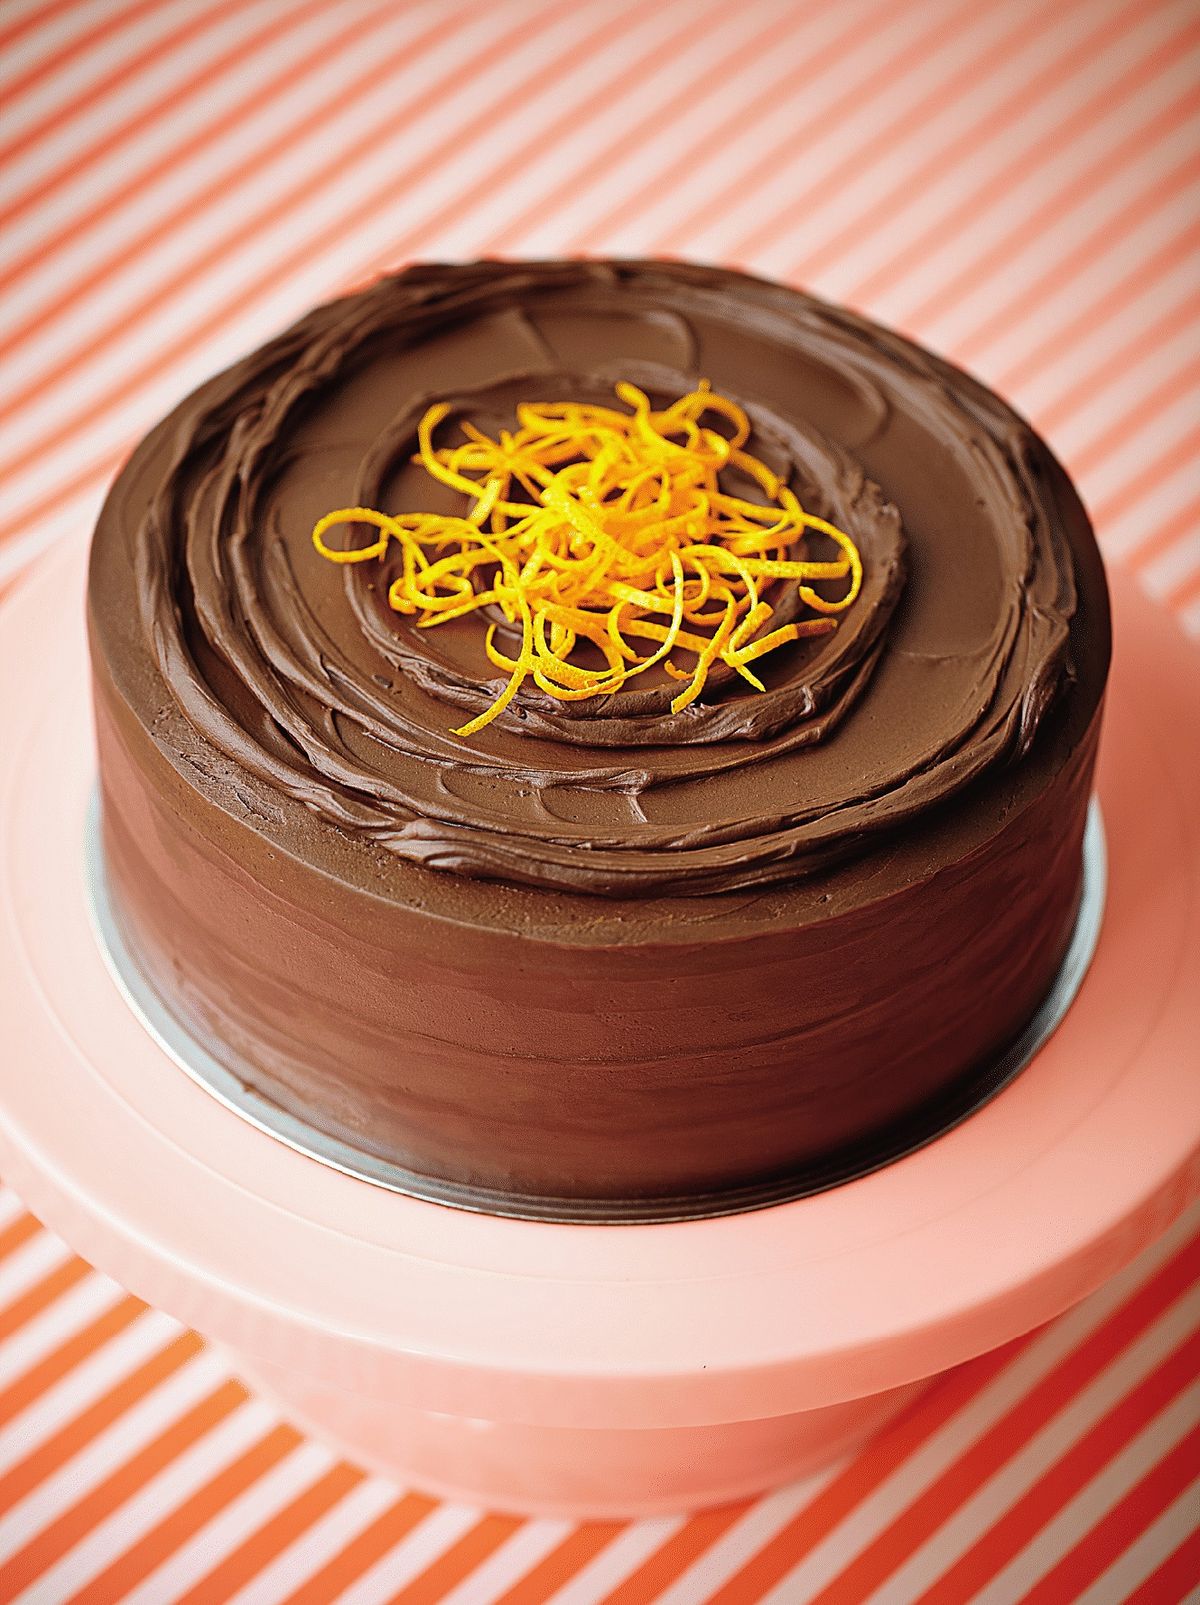 ‘Jaffa Cake’ Cake